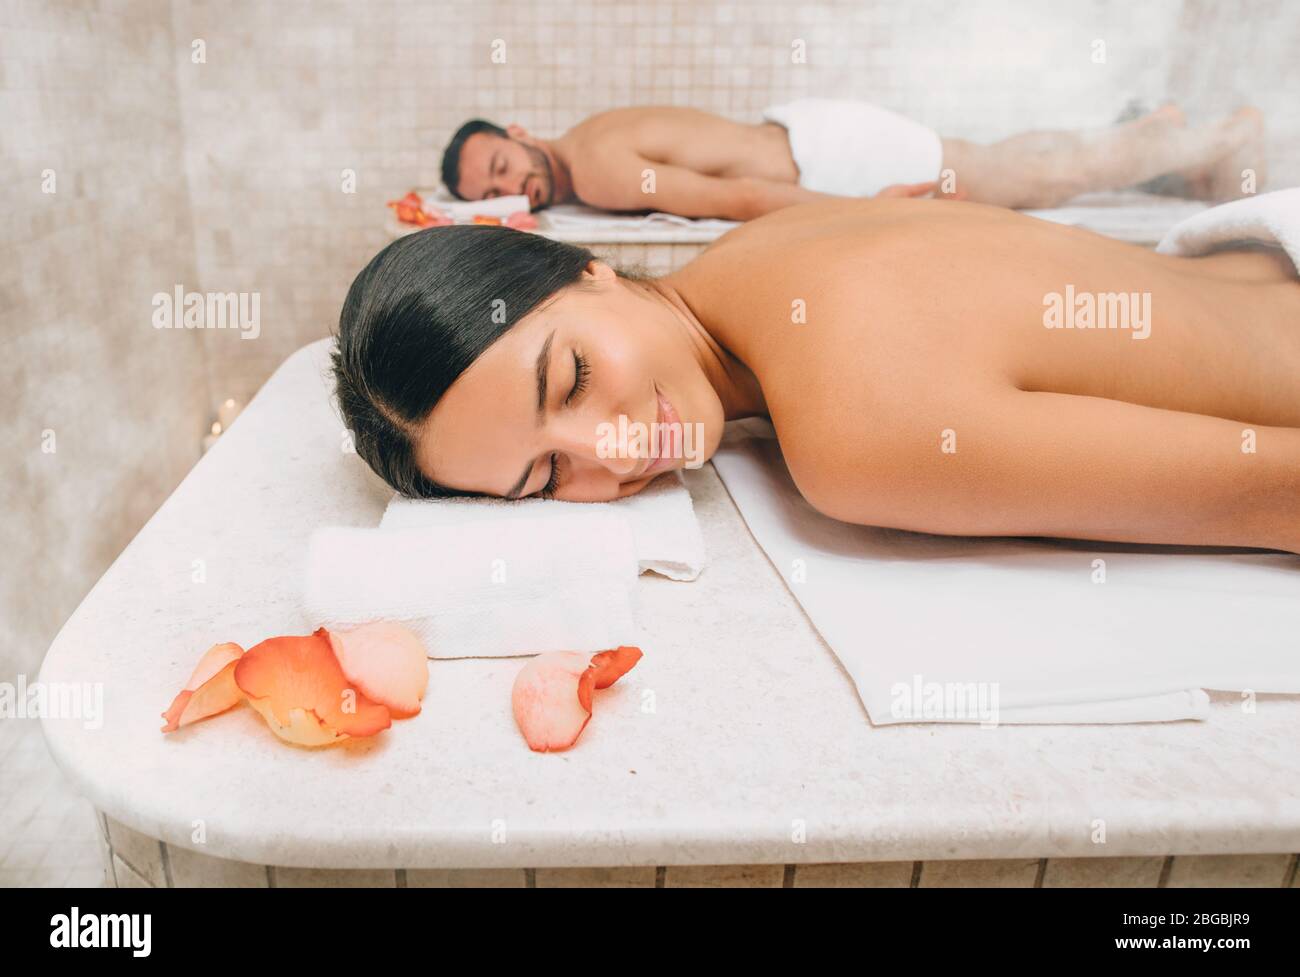 Belle femme et son petit ami se trouvent sur des tables de massage au hammam chaud avant les procédures de lavage du corps. Bain turc pour couple Banque D'Images